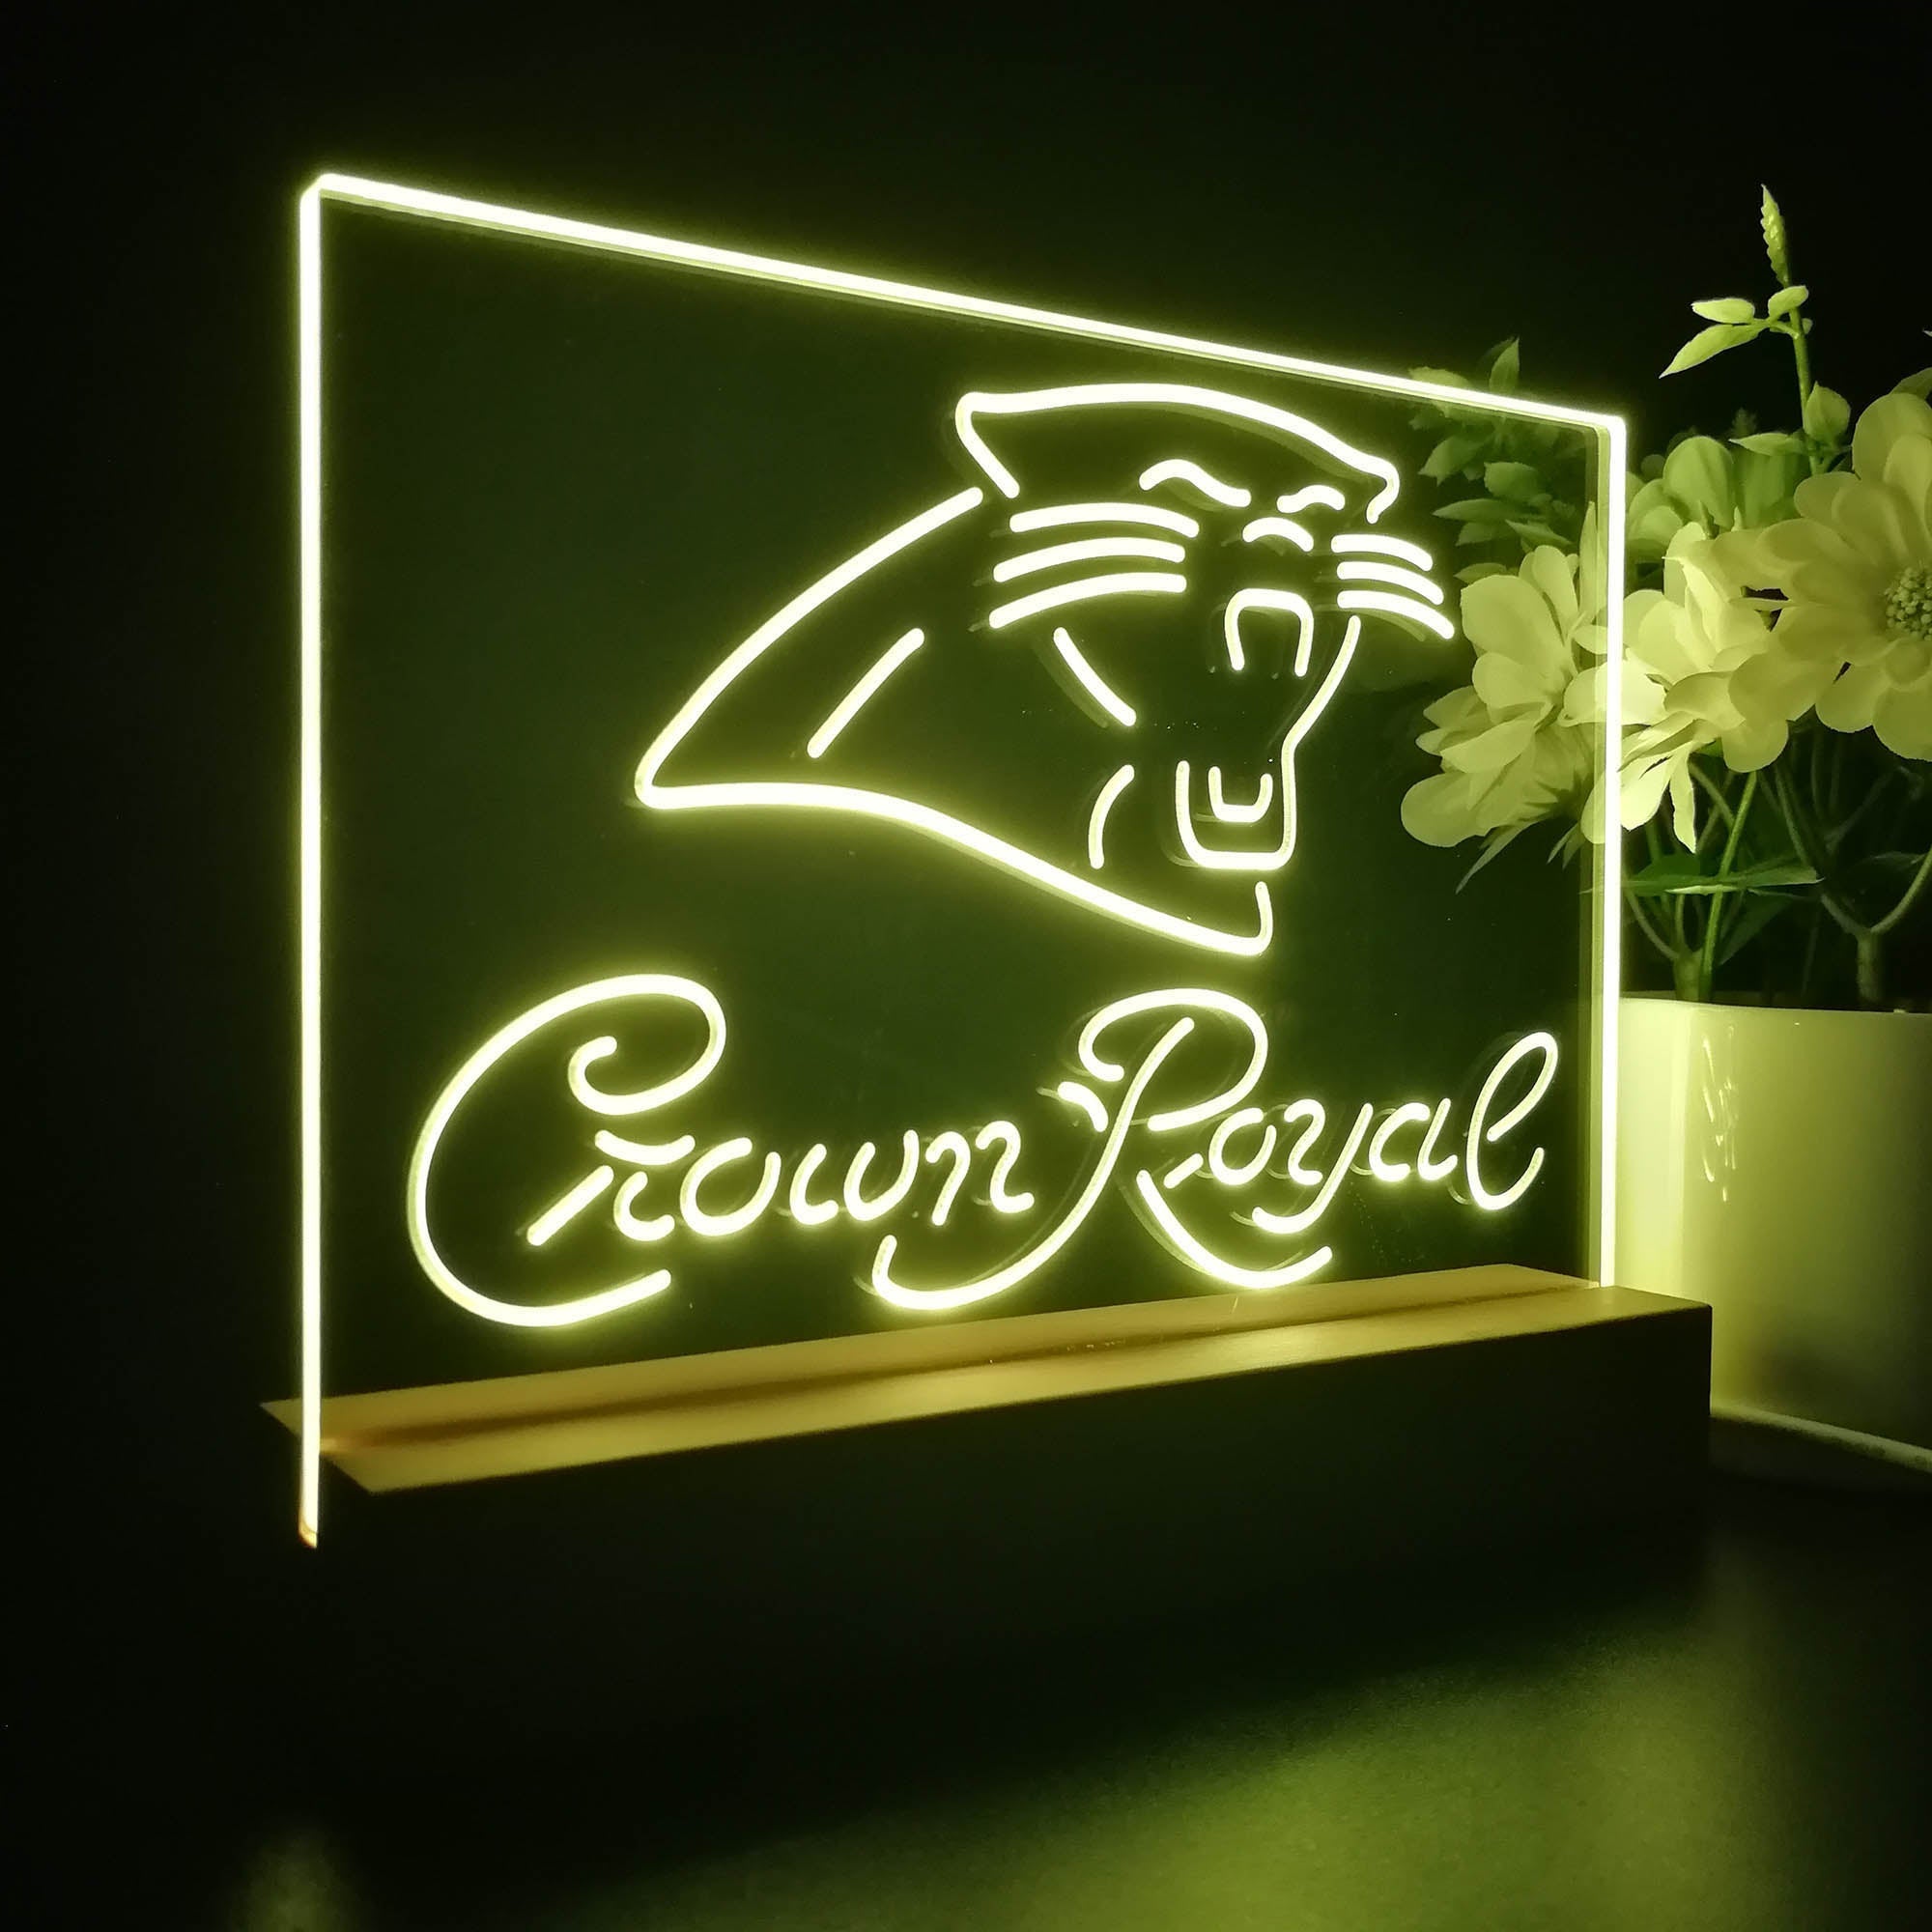 Crown Royal Bar Carolina Panthers Est. 1995 Night Light Pub Bar Lamp